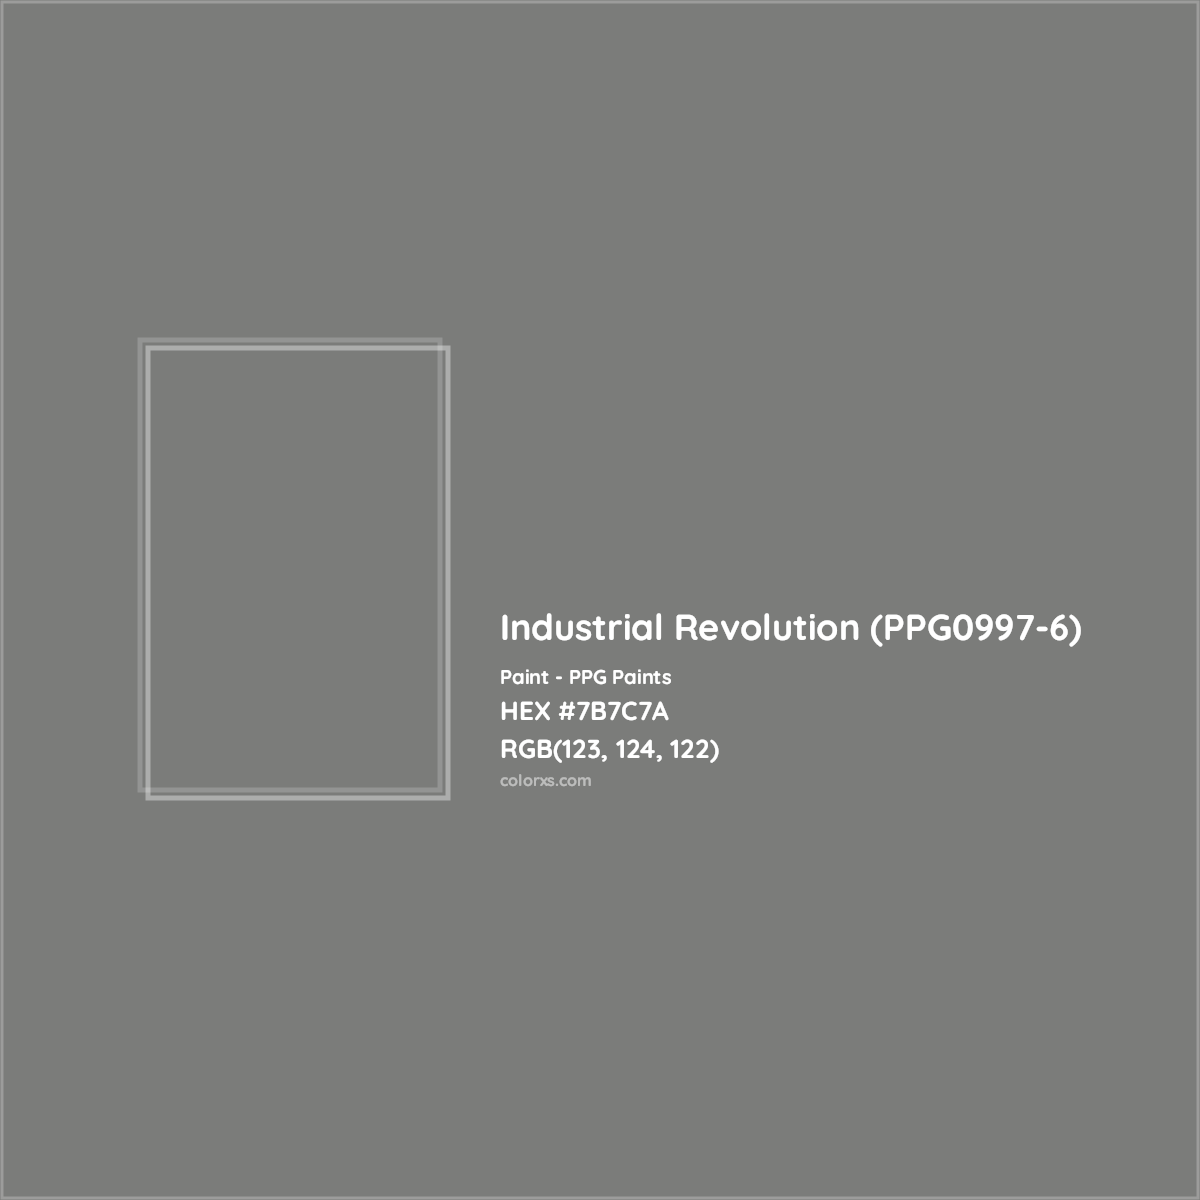 HEX #7B7C7A Industrial Revolution (PPG0997-6) Paint PPG Paints - Color Code